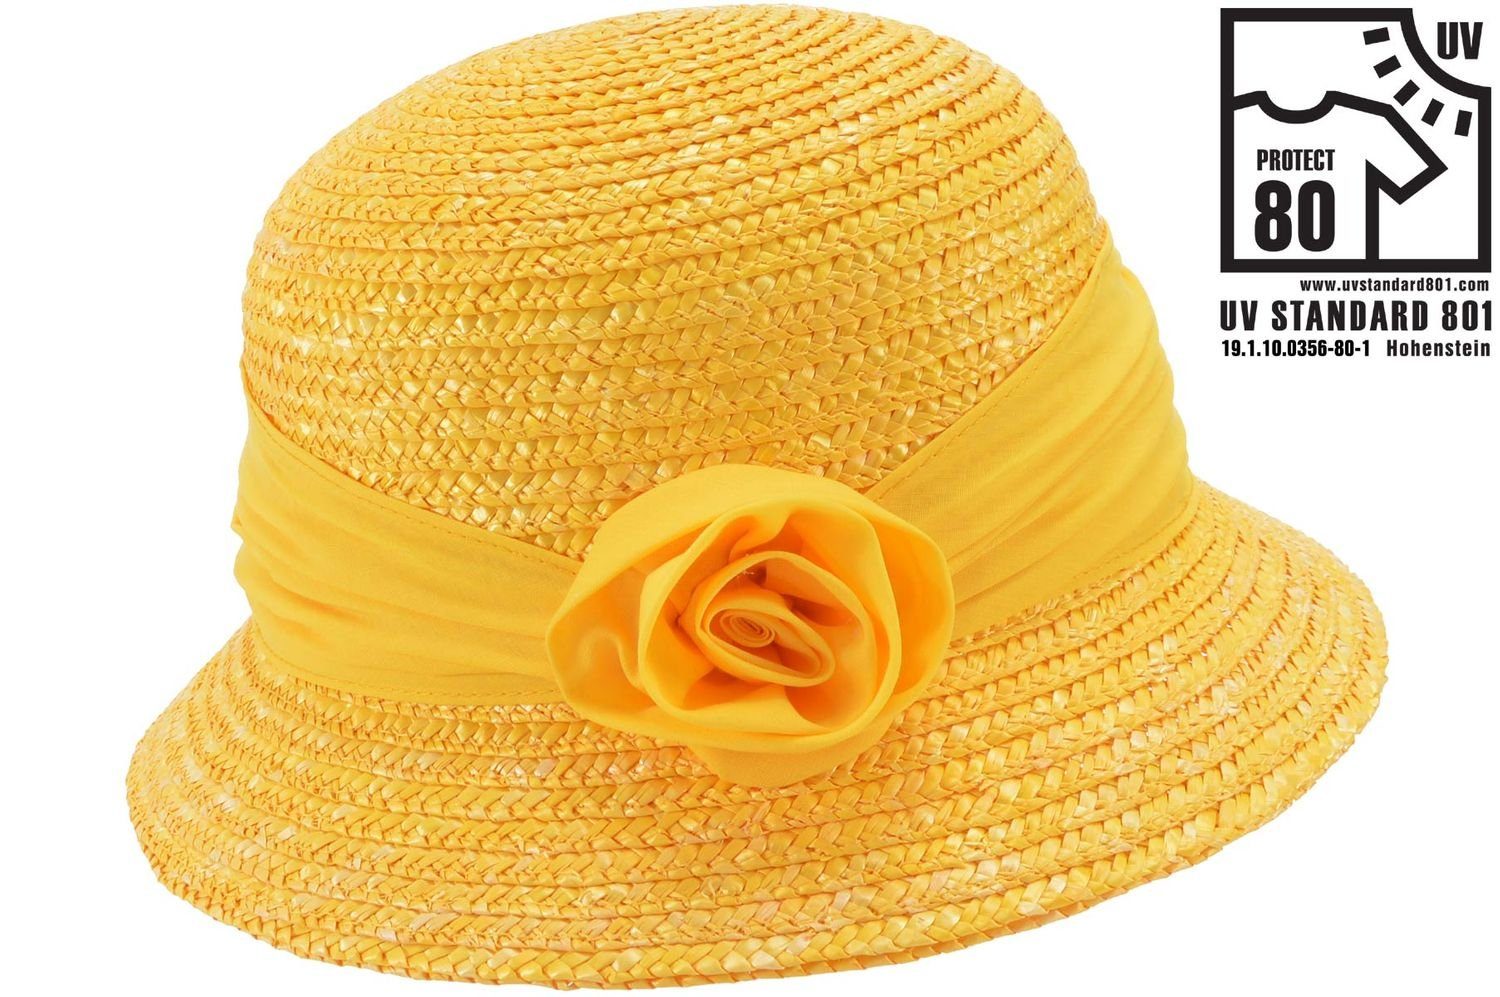 Seeberger Strohhut Elegante Glockenhut mit Blume & UV-Schutz 80 0043 honig